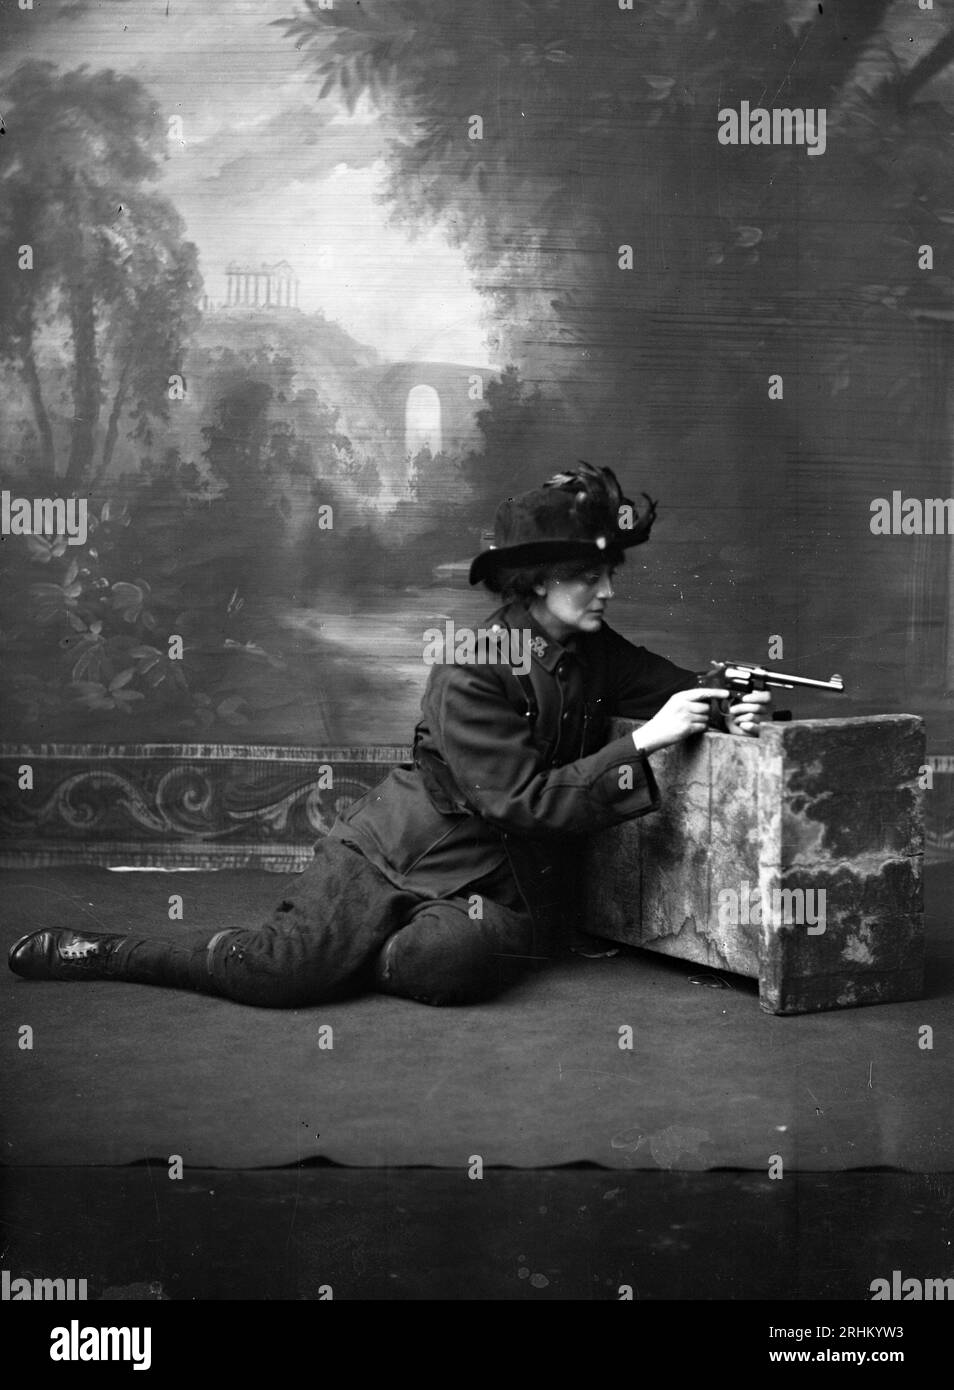 Constance Georgine Markievicz (née Gore-Booth), également connue sous le nom de Comtesse Markievicz et Madame Markievicz en uniforme examinant un revolver Colt New Service Model 1909, posa vers 1915 Banque D'Images